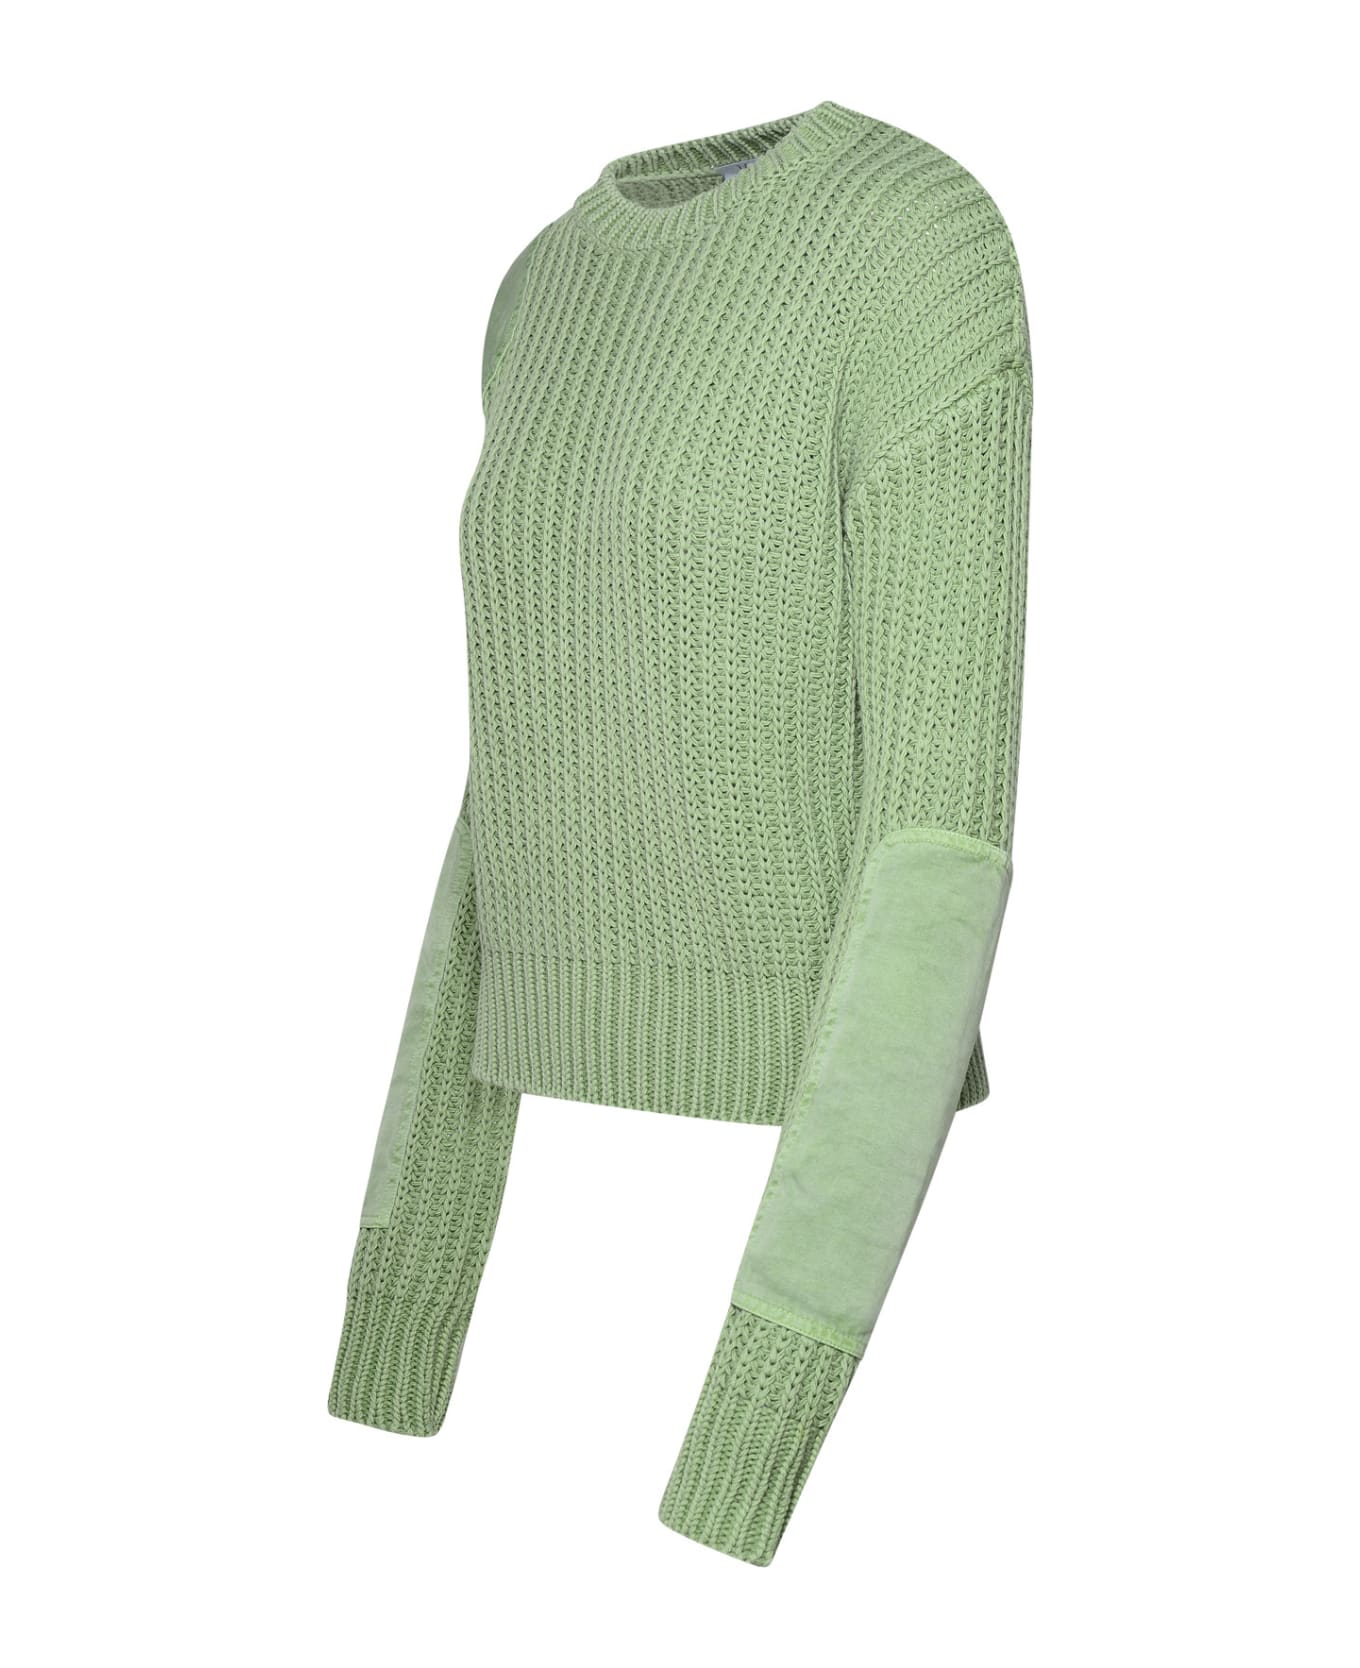 Max Mara 'abisso1234' Sage Green Cotton Sweater - Green